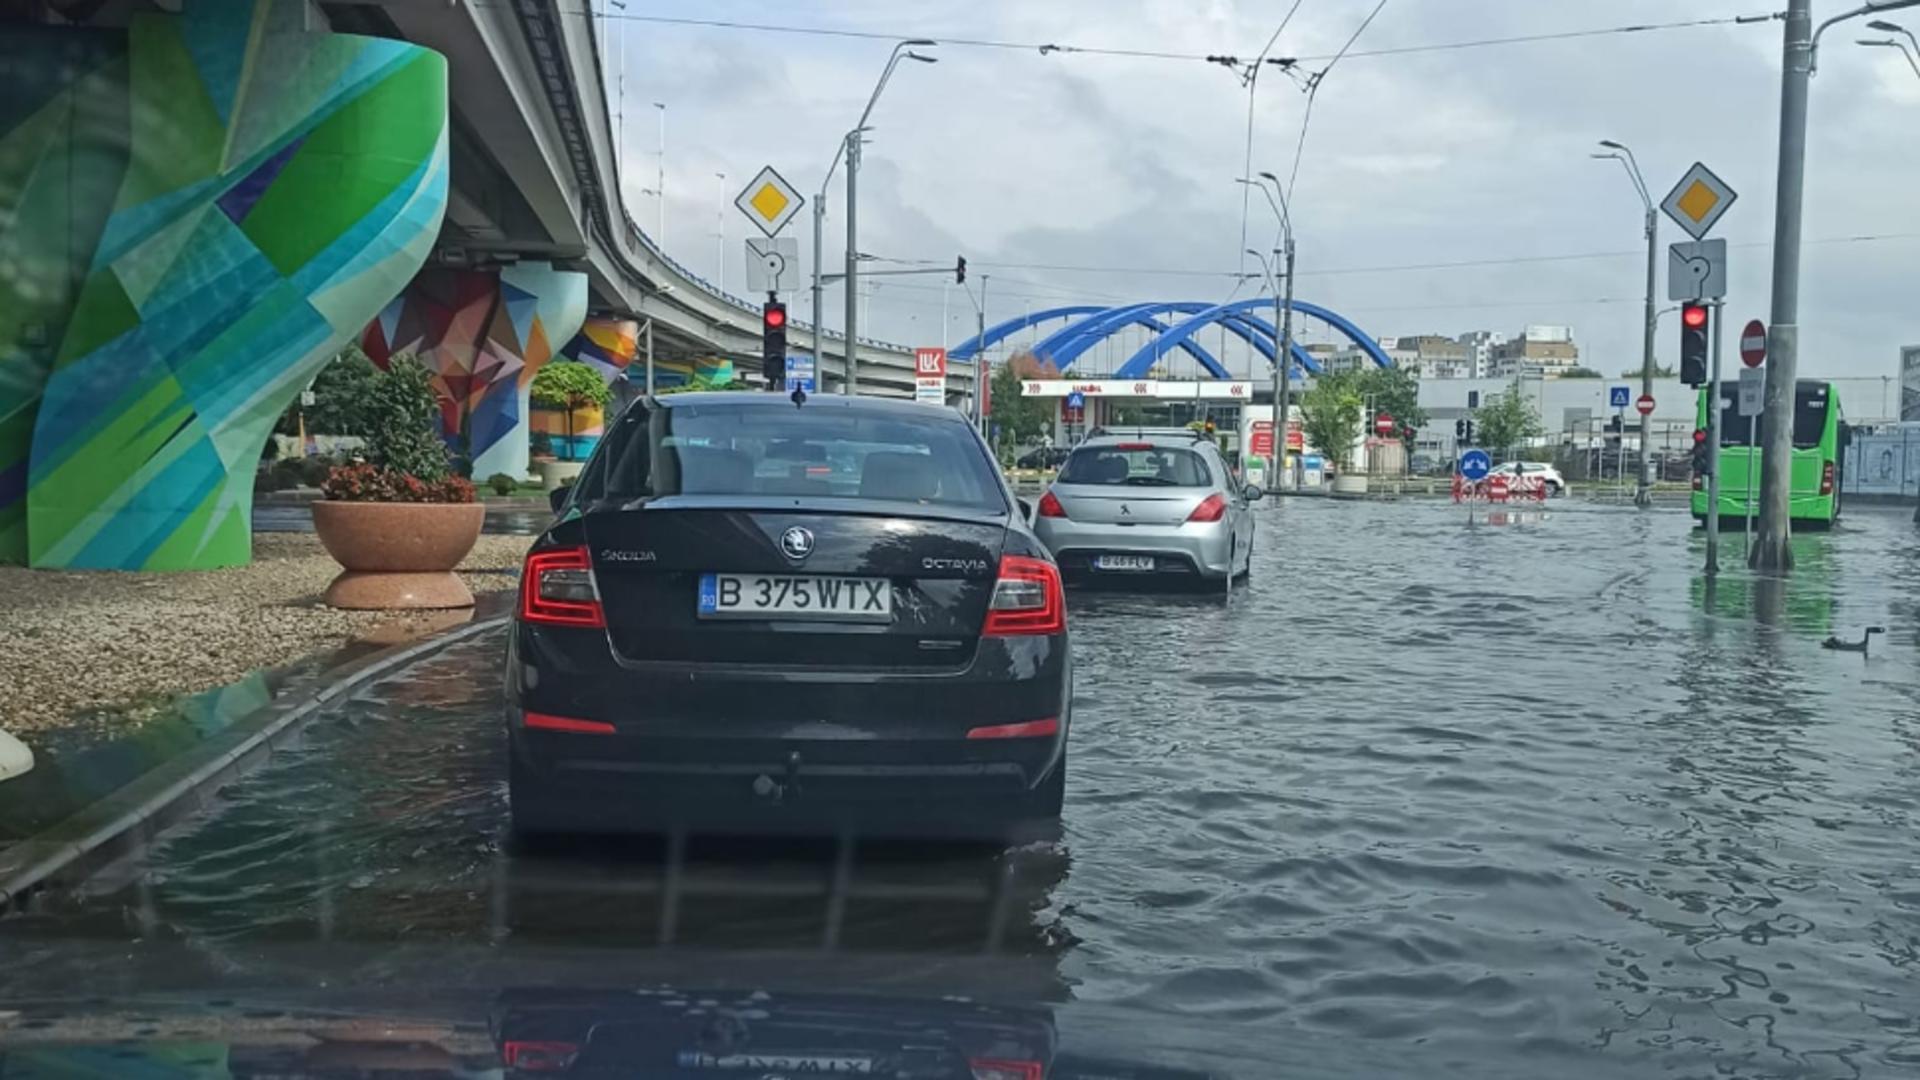 Inundații Capitală / Foto: Facebook grup Info Trafic Bucuresti si Ilfov